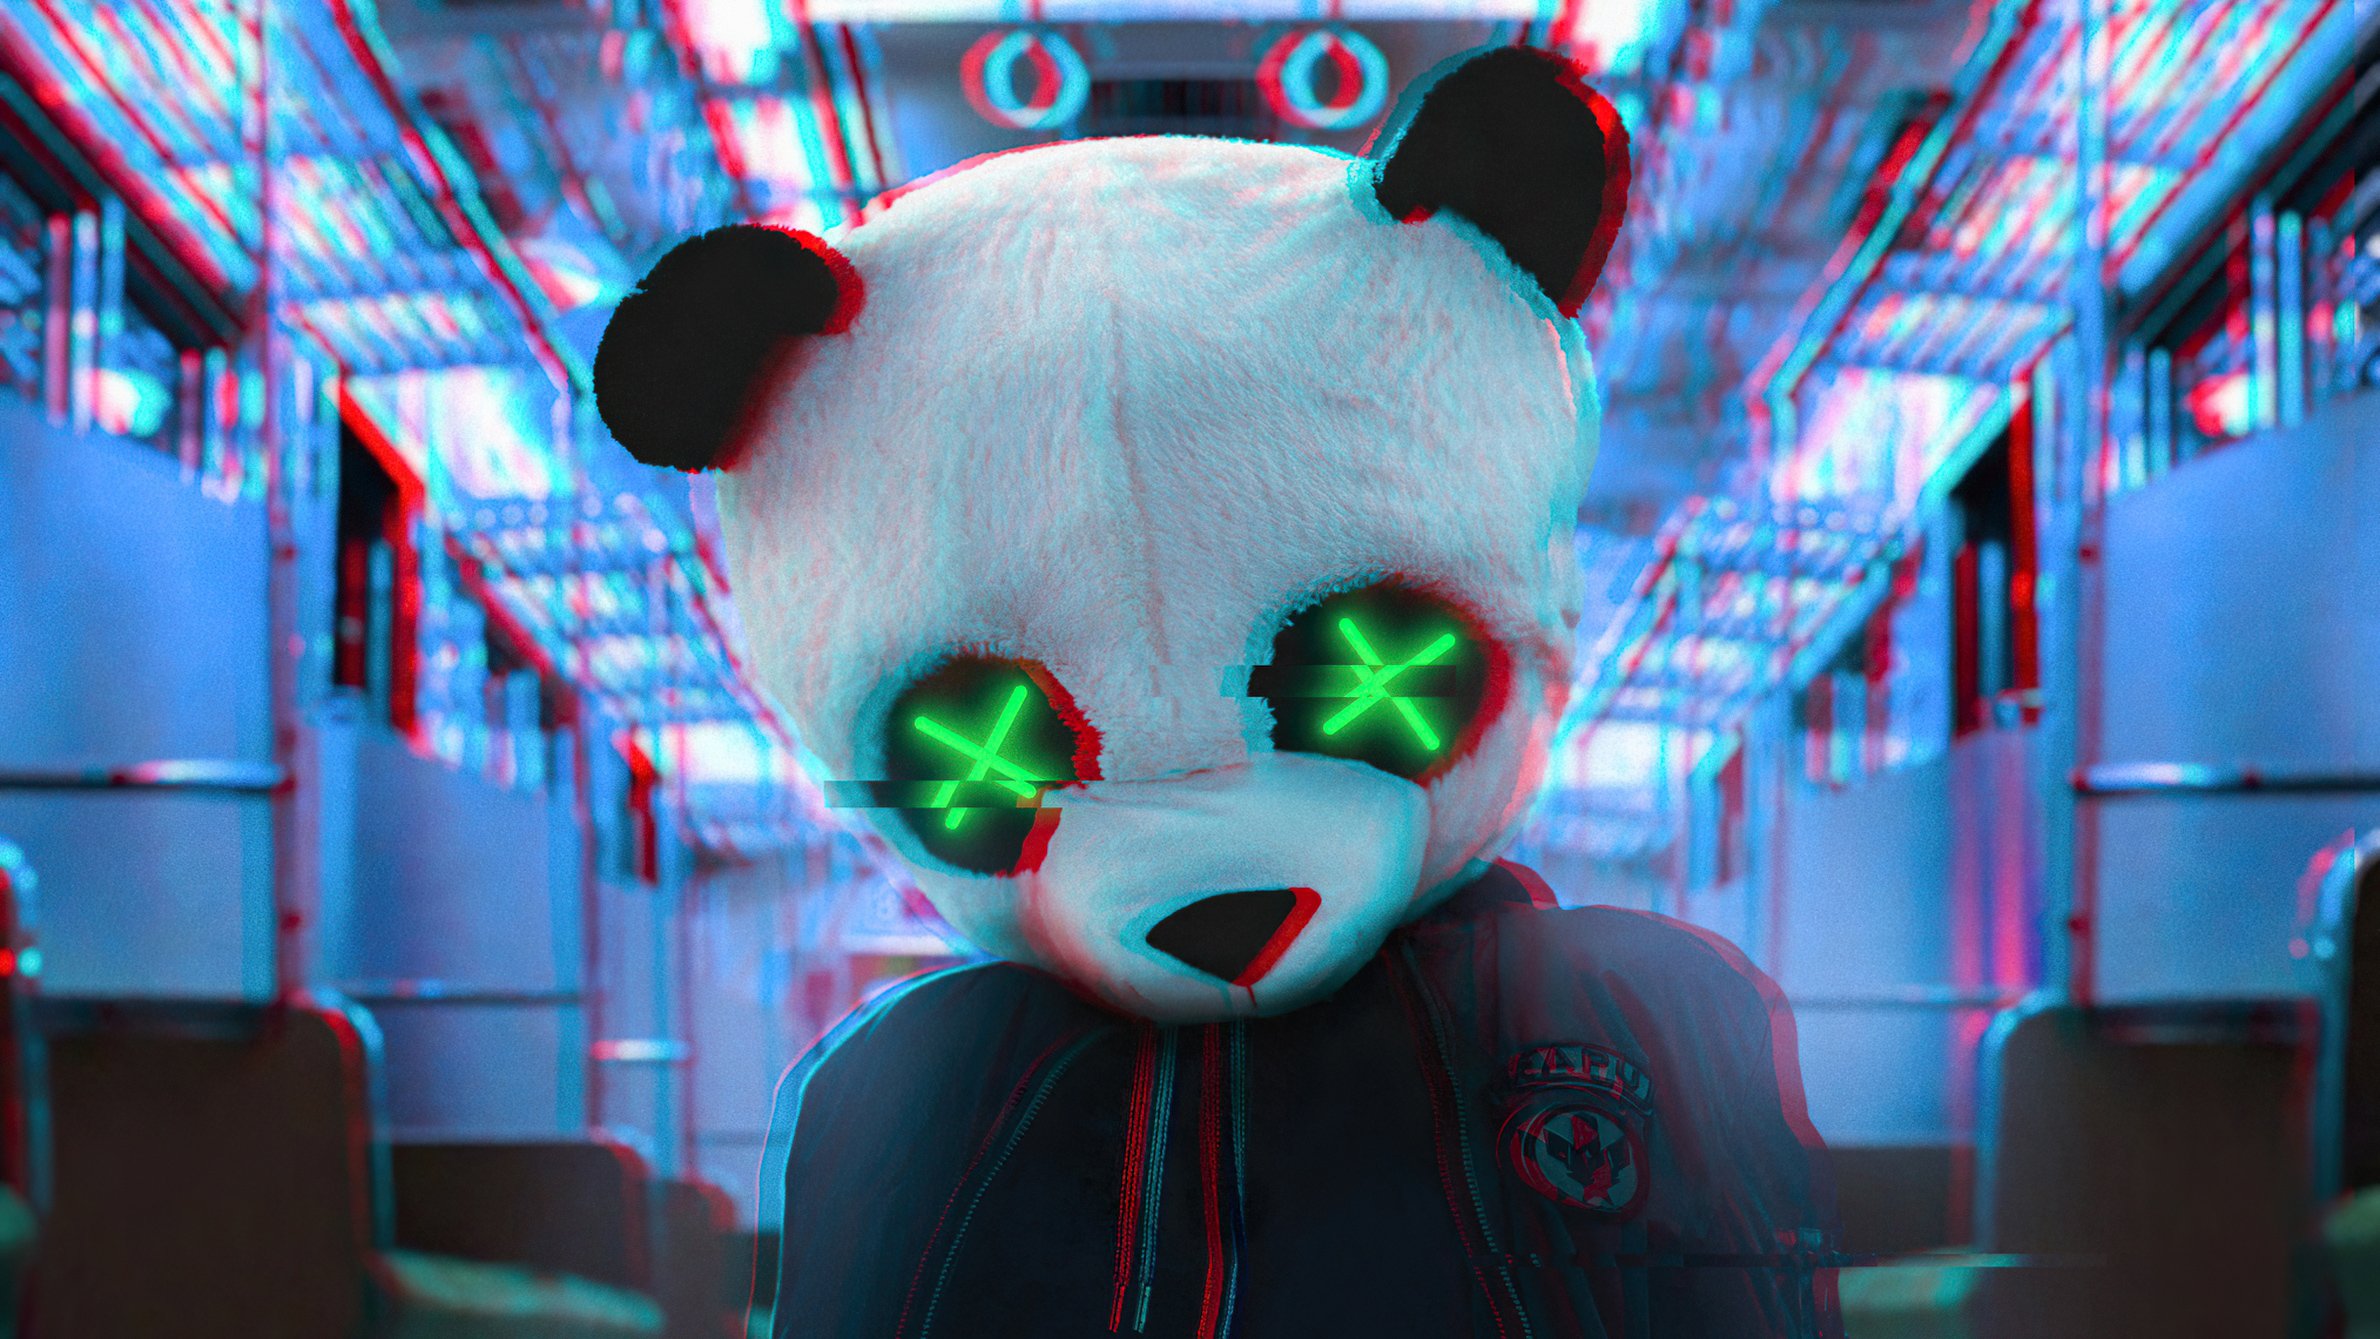 Fondos de pantalla Máscara de Panda en tren